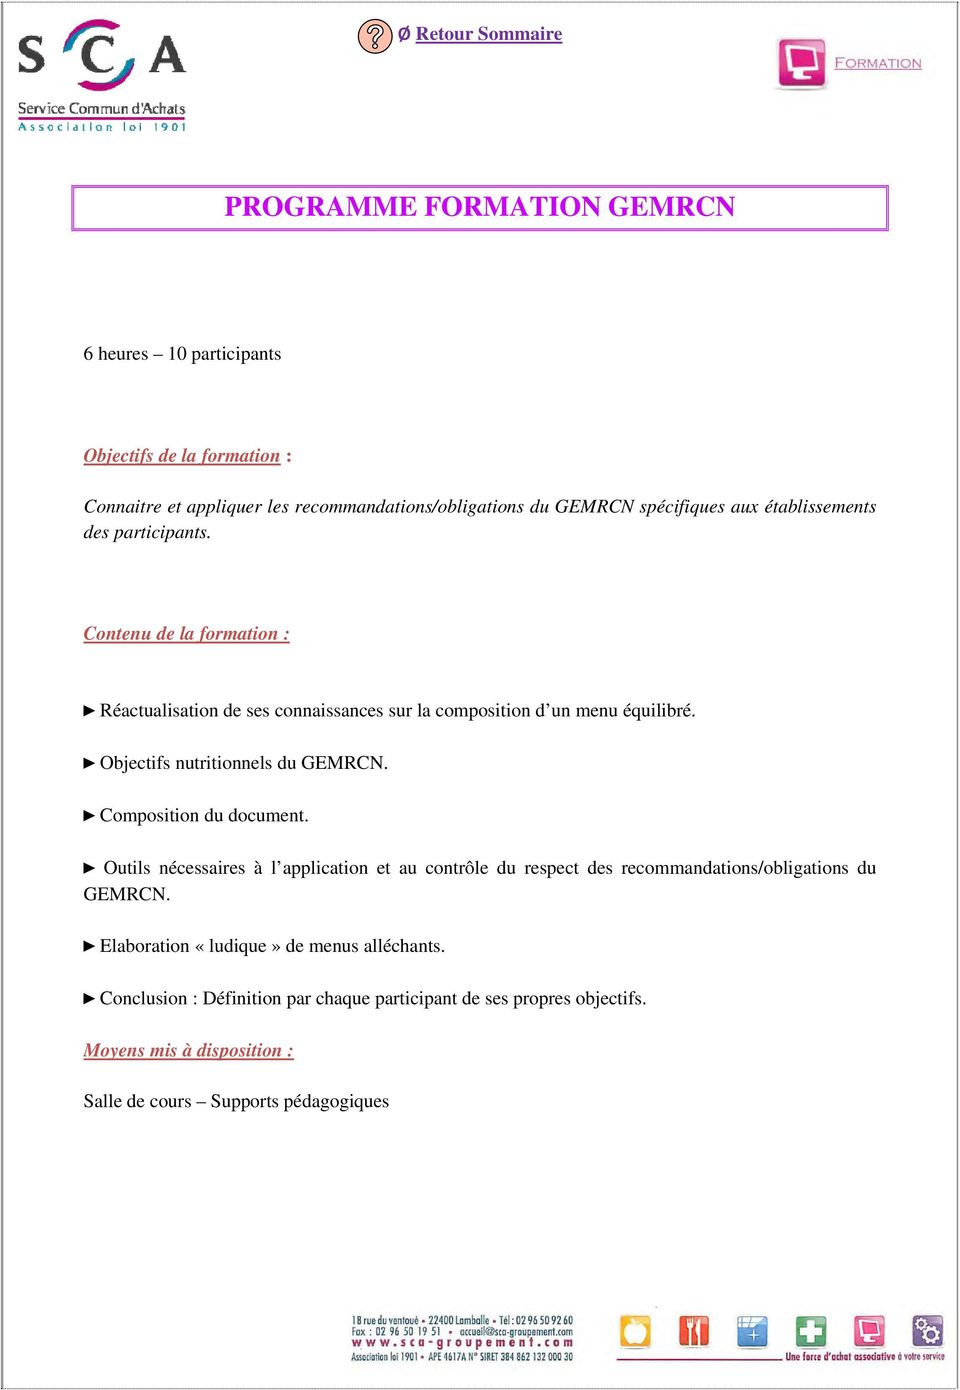 Objectifs nutritionnels du GEMRCN. Composition du document.